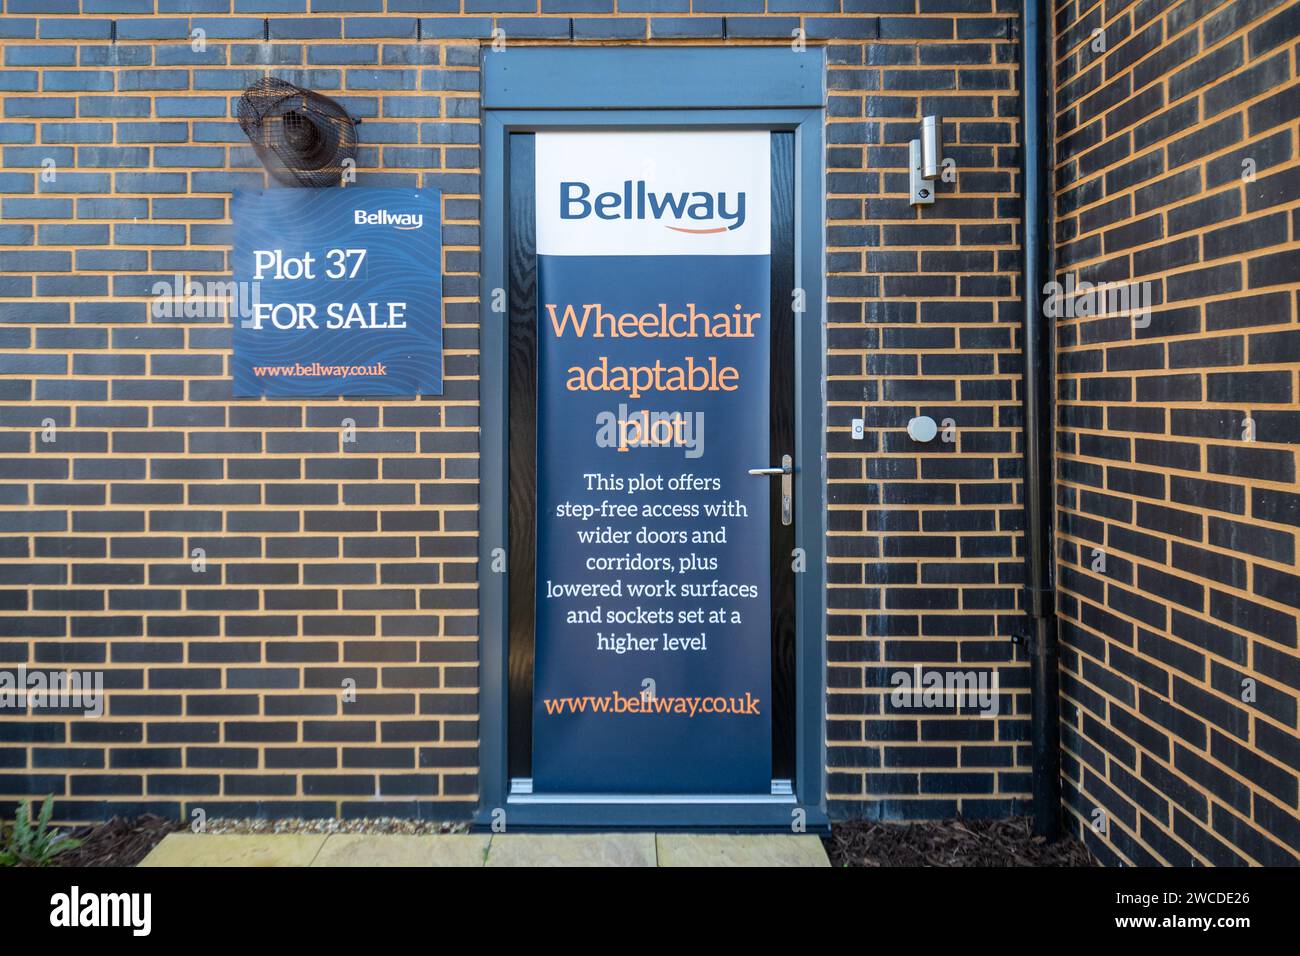 Trama adattabile per sedie a rotelle pubblicizzata dallo sviluppatore di Bellway Homes in un appartamento al piano terra o in un nuovo edificio, Inghilterra, Regno Unito Foto Stock